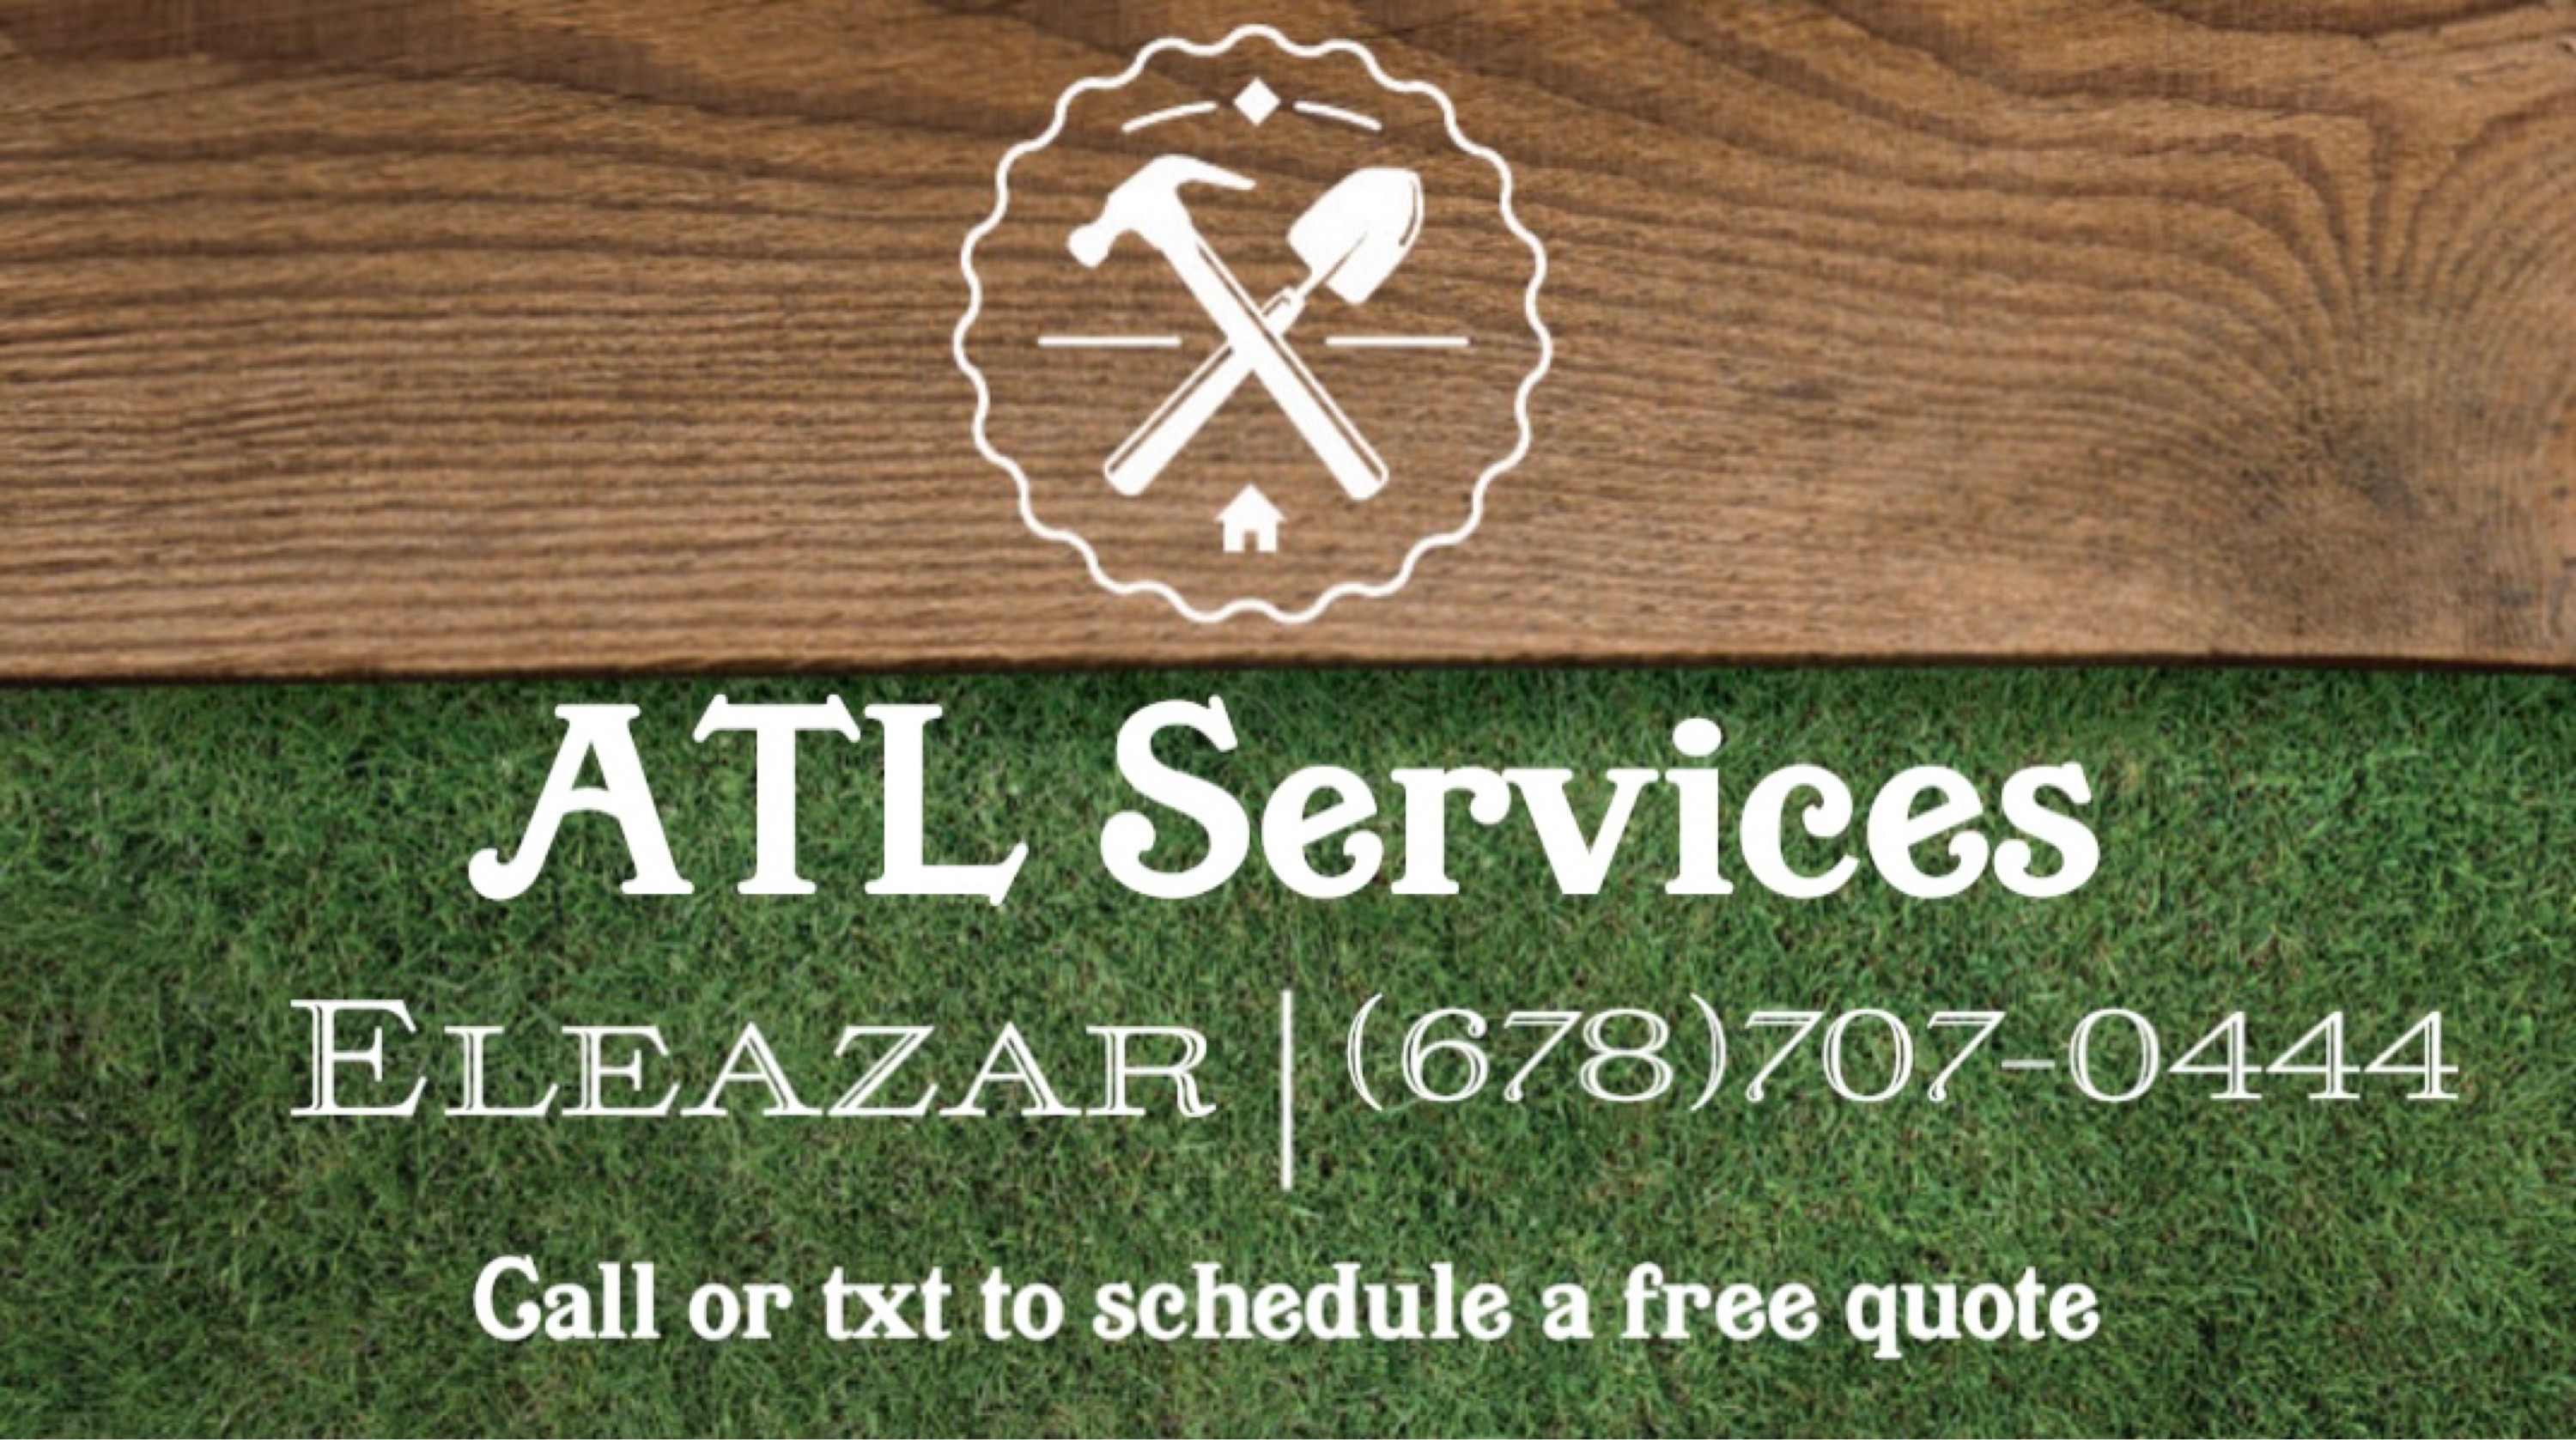 ATL Services Logo